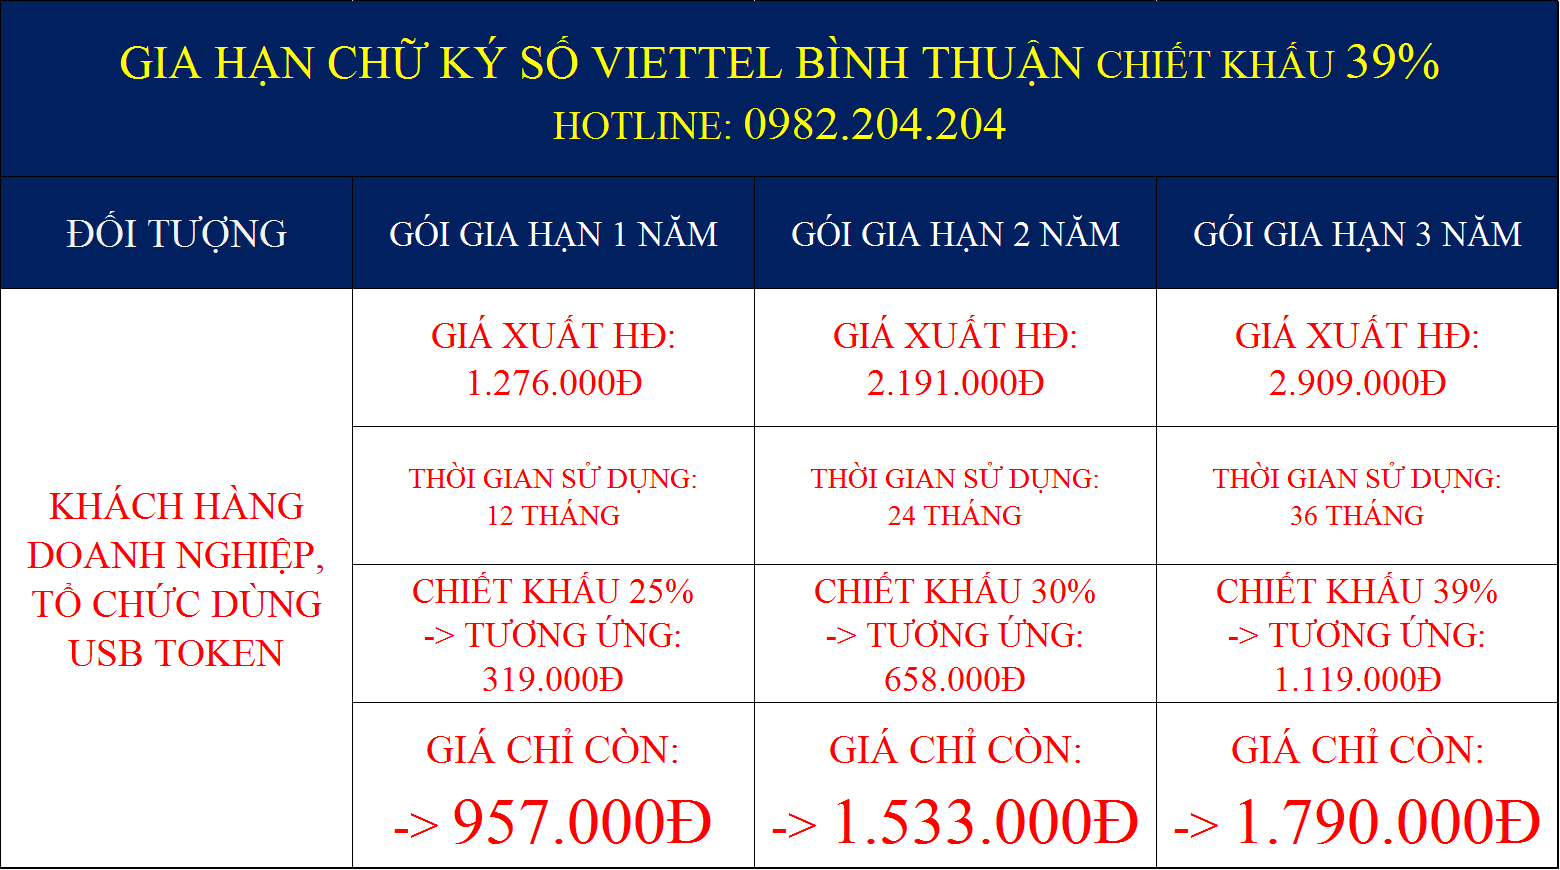 Gia hạn chữ ký số Viettel Bình Thuận giá rẻ